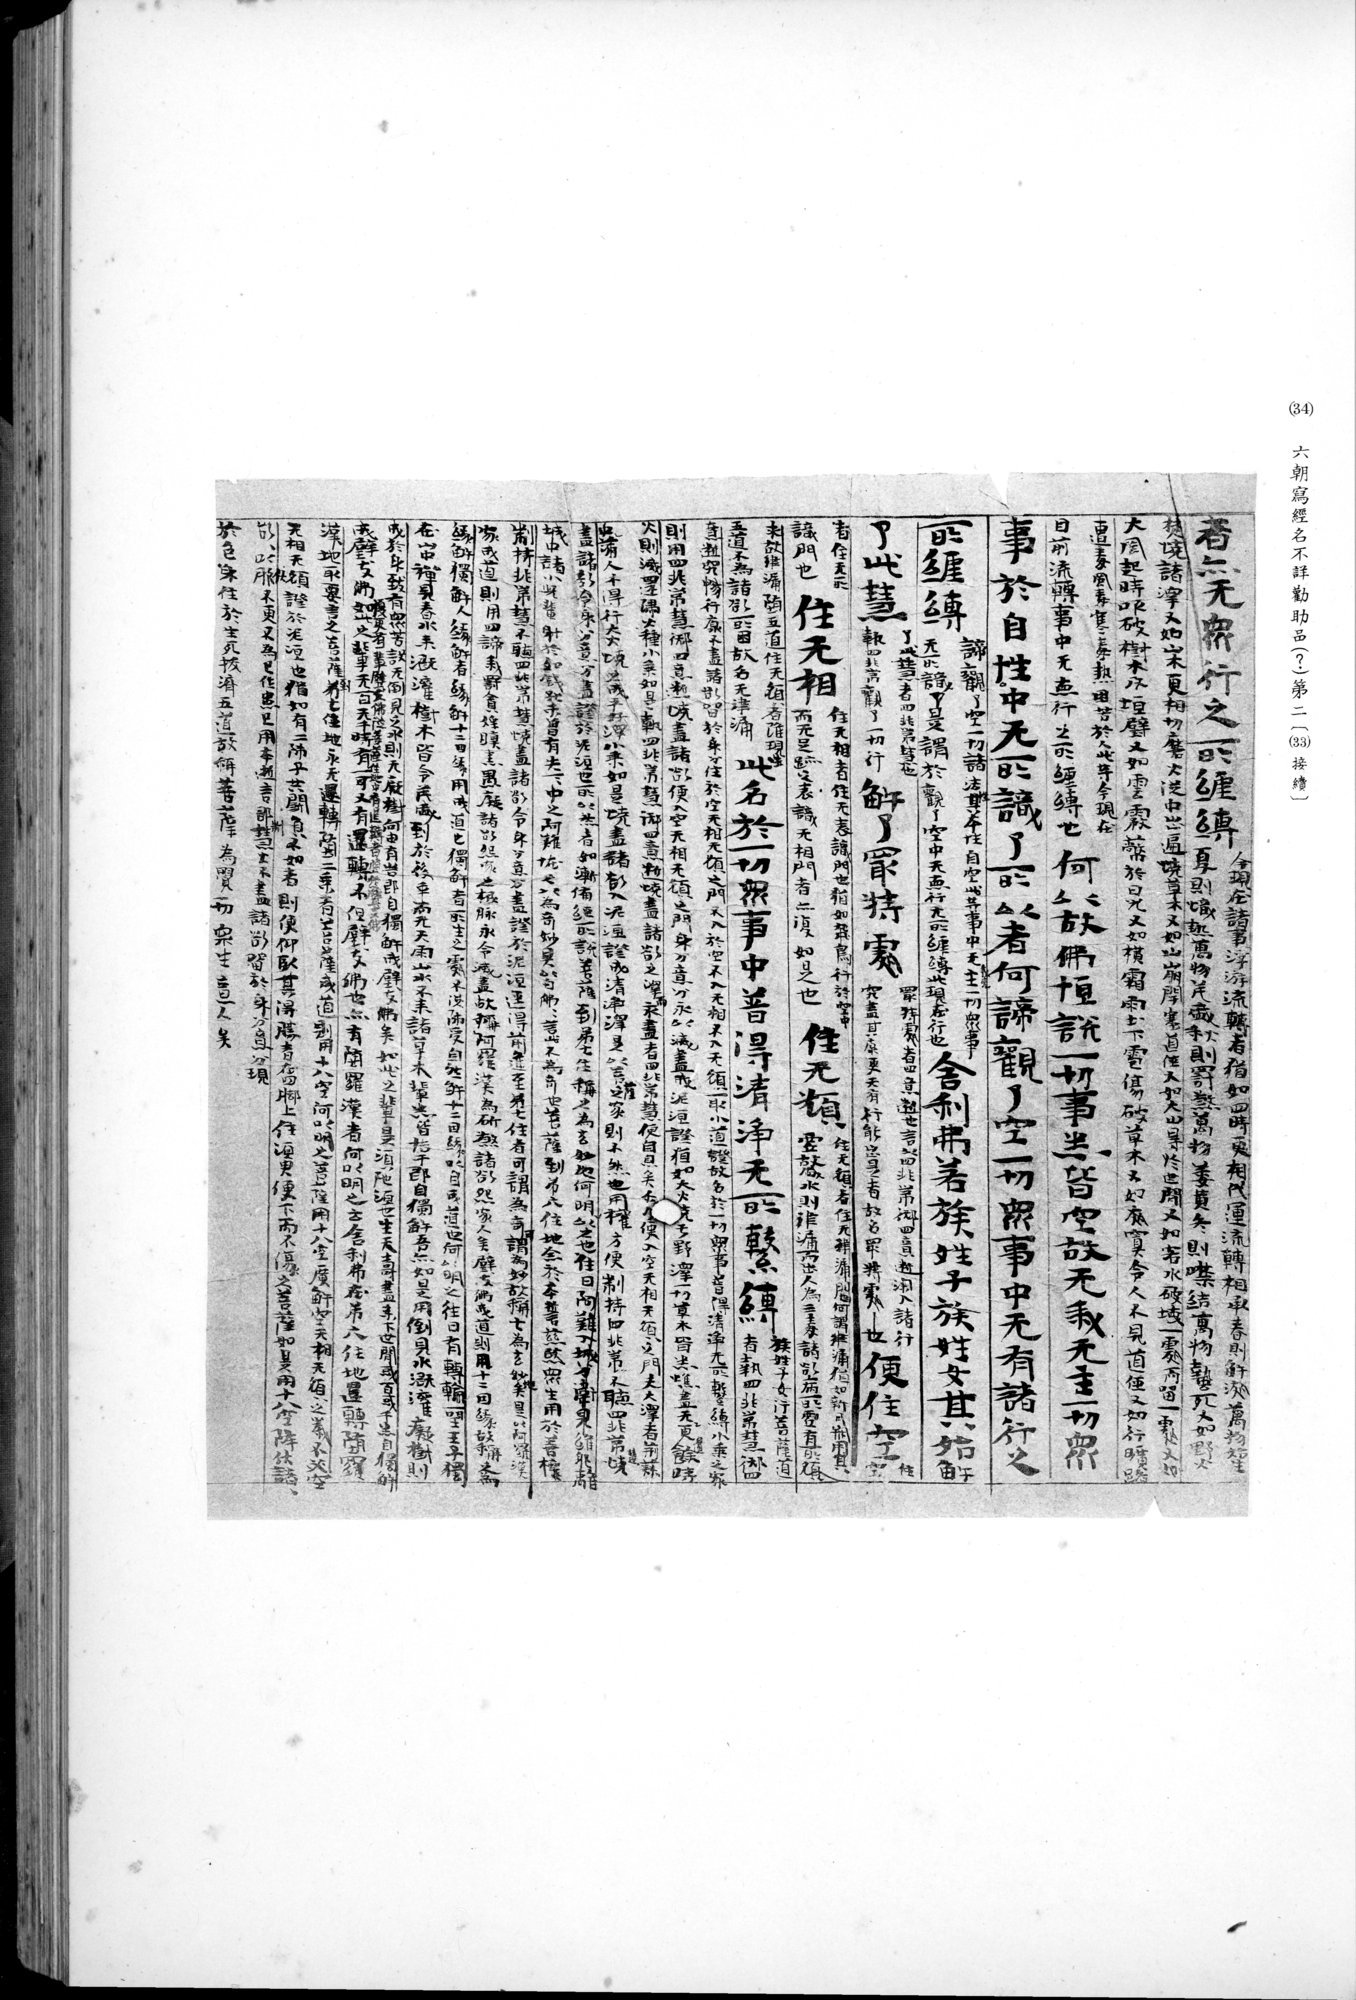 西域考古図譜 : vol.2 / Page 83 (Grayscale High Resolution Image)